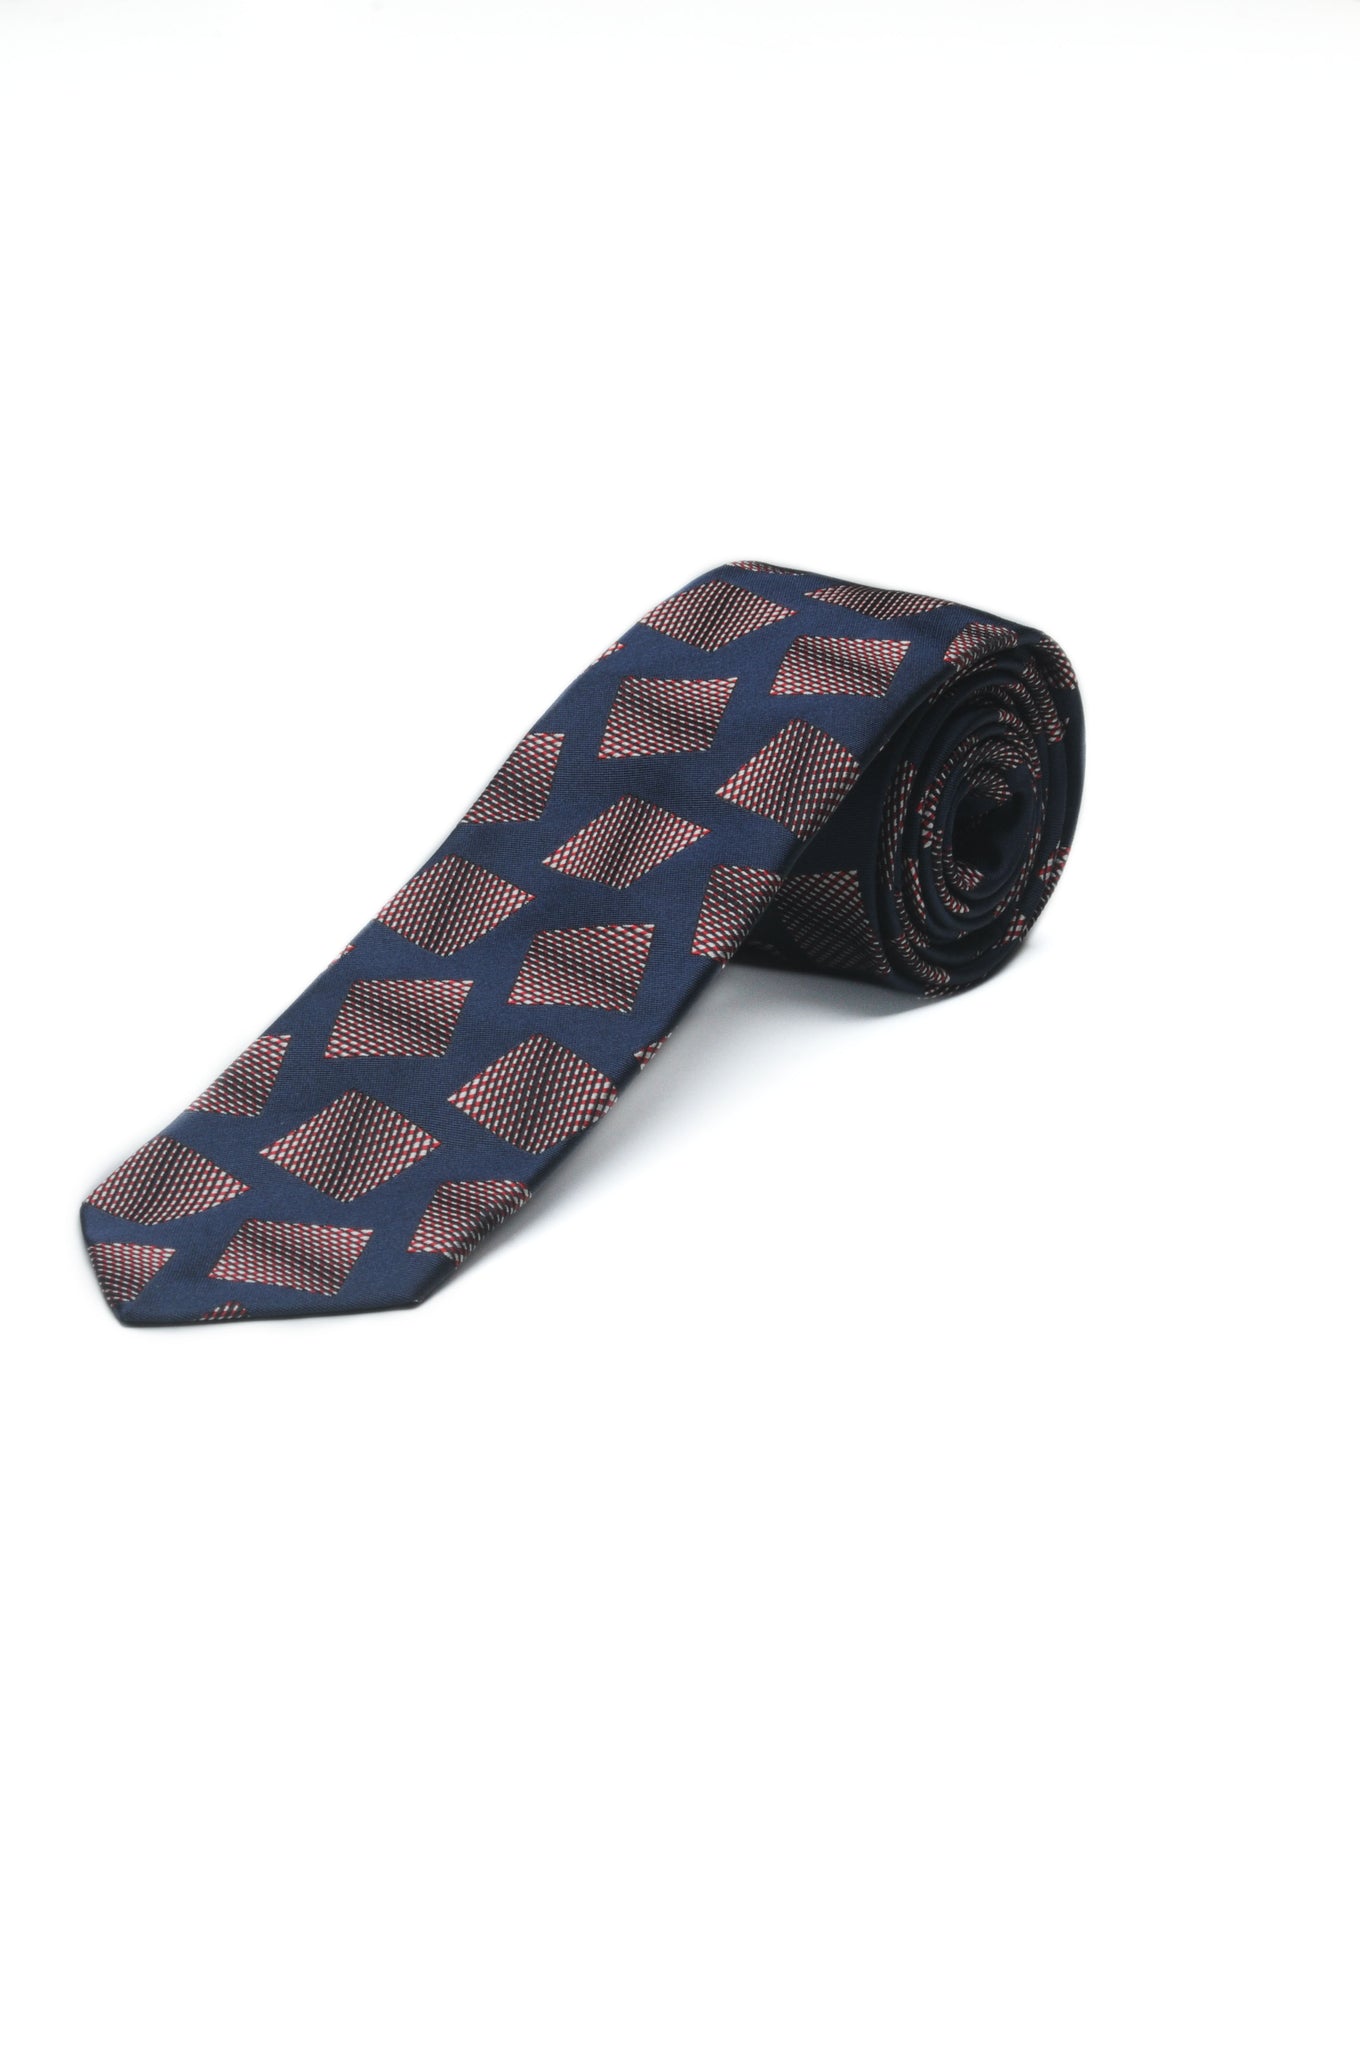 Cravatta jacquard motivo quadrato optical